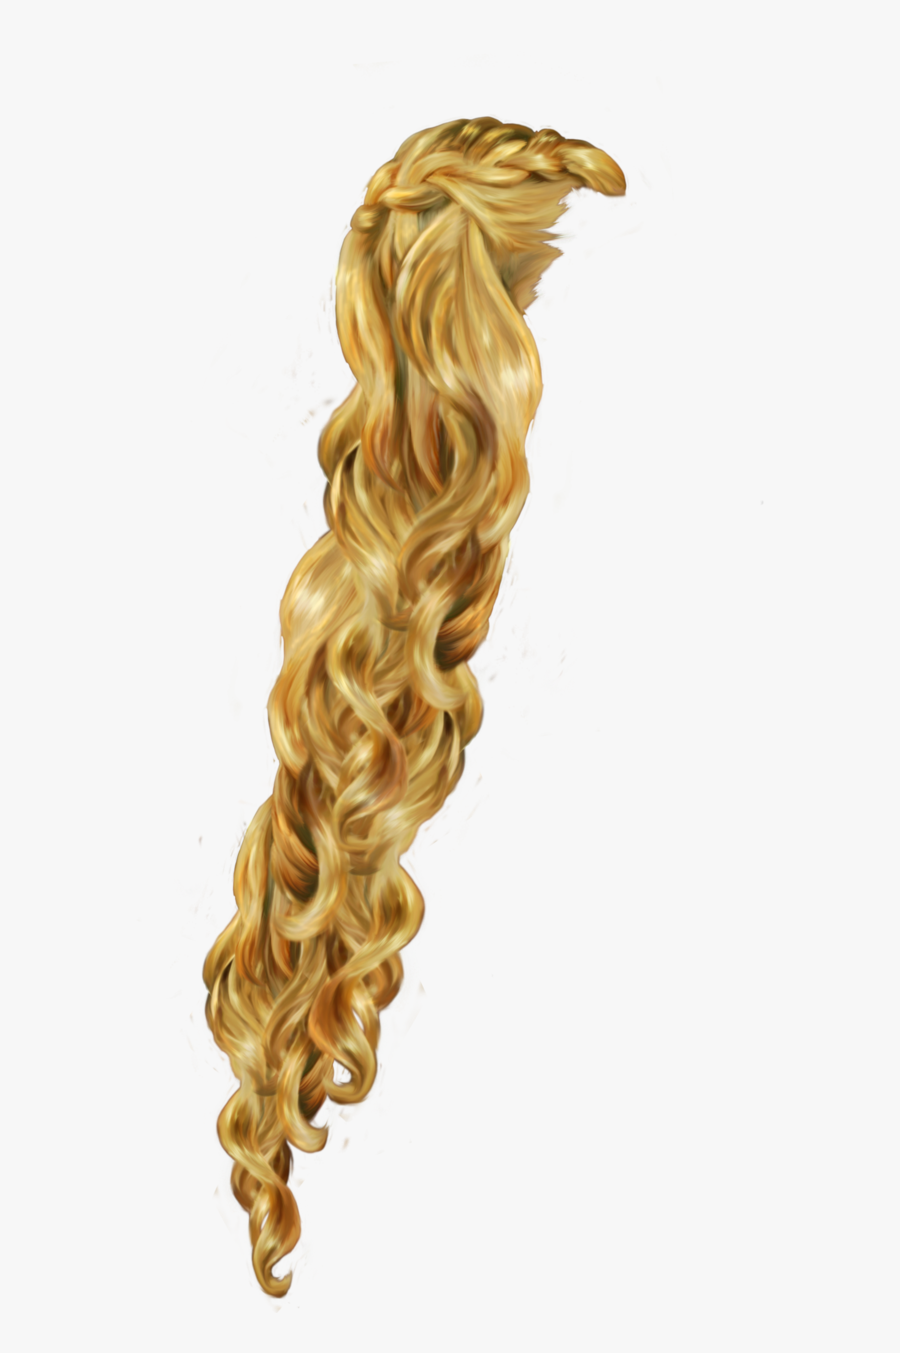 Transparent Rapunzel Clipart - Rapunzel Hair Clipart, Transparent Clipart